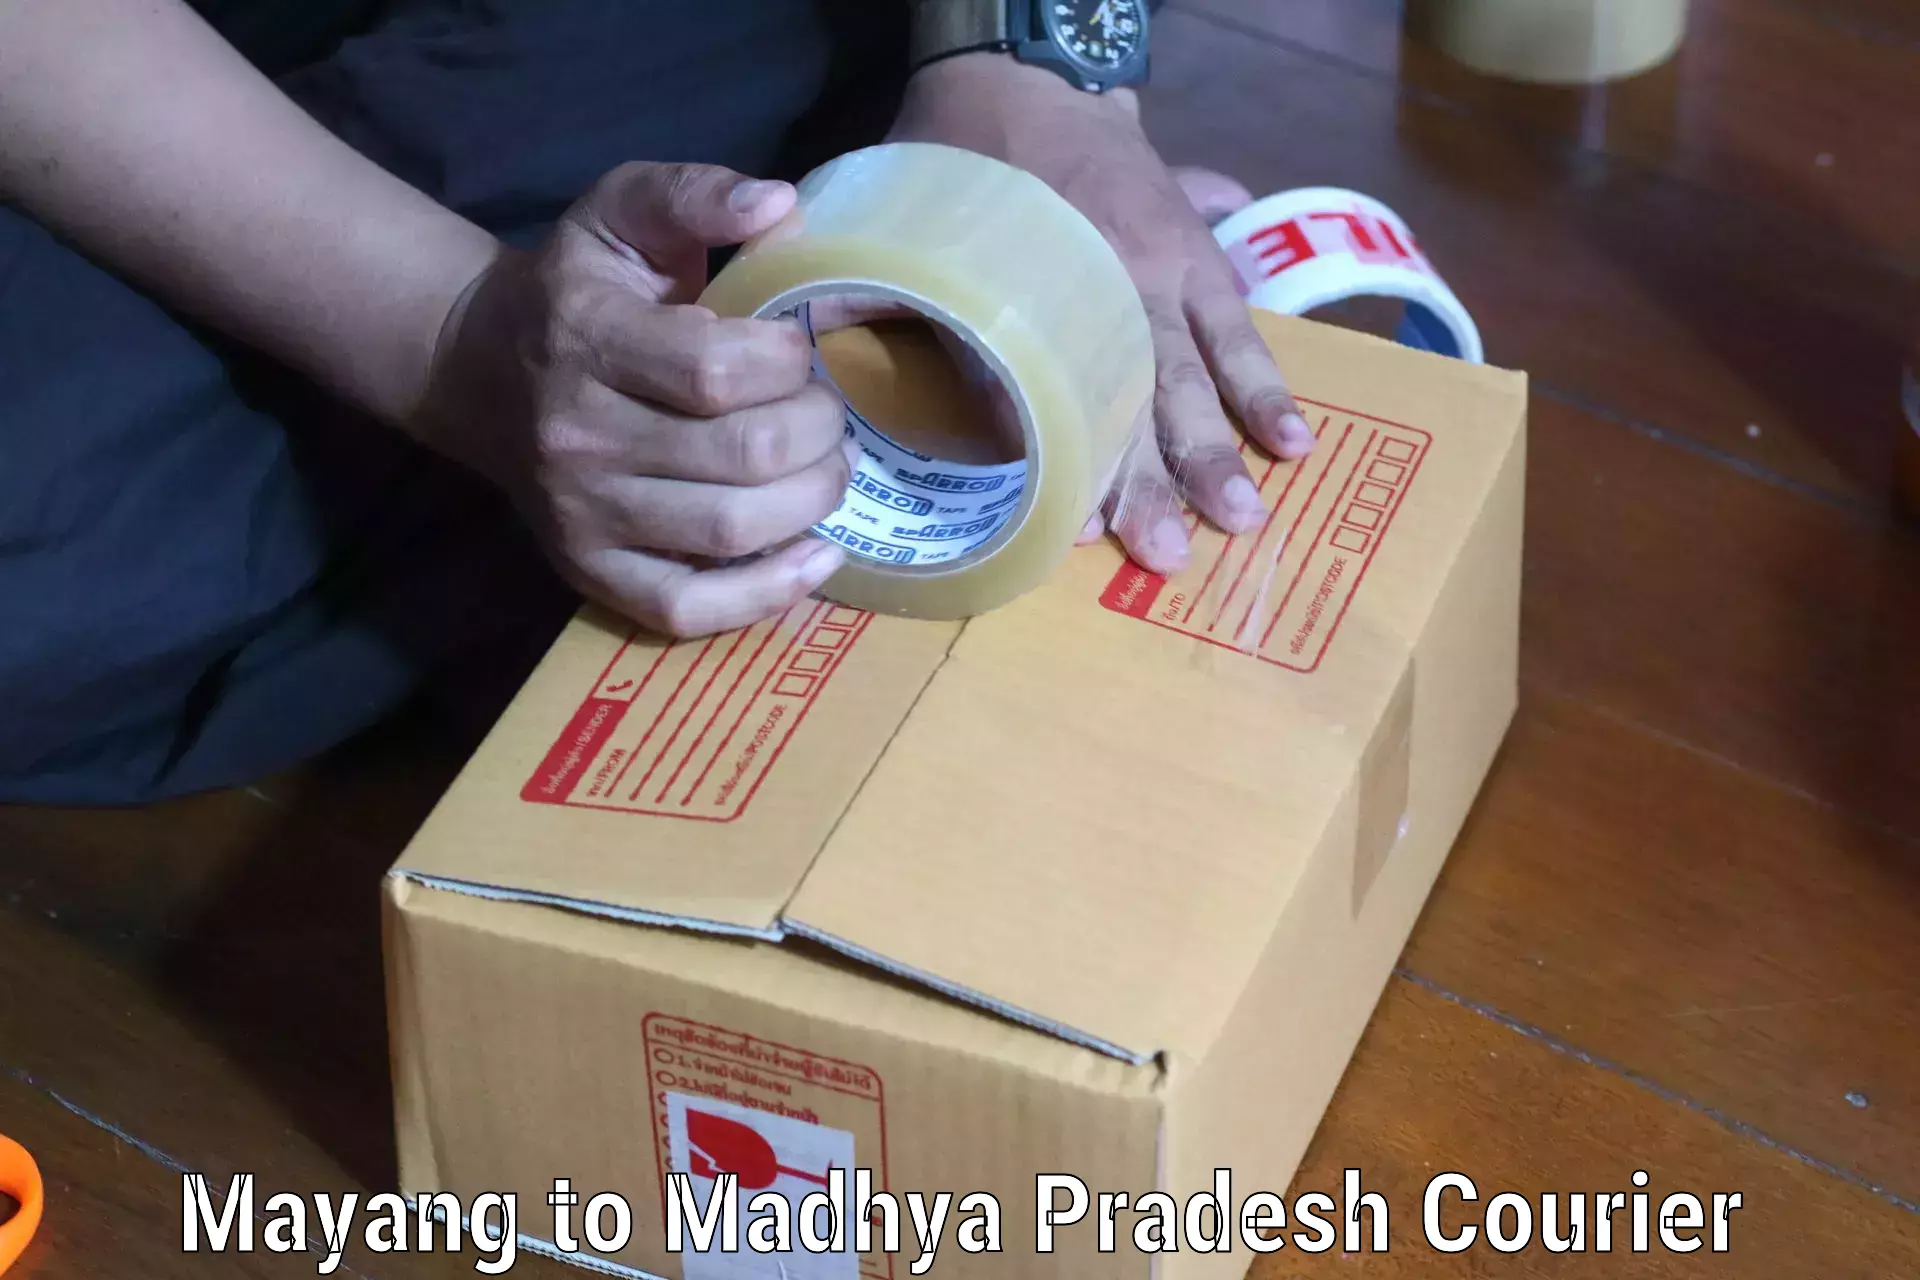 Comprehensive shipping network Mayang to Nagod